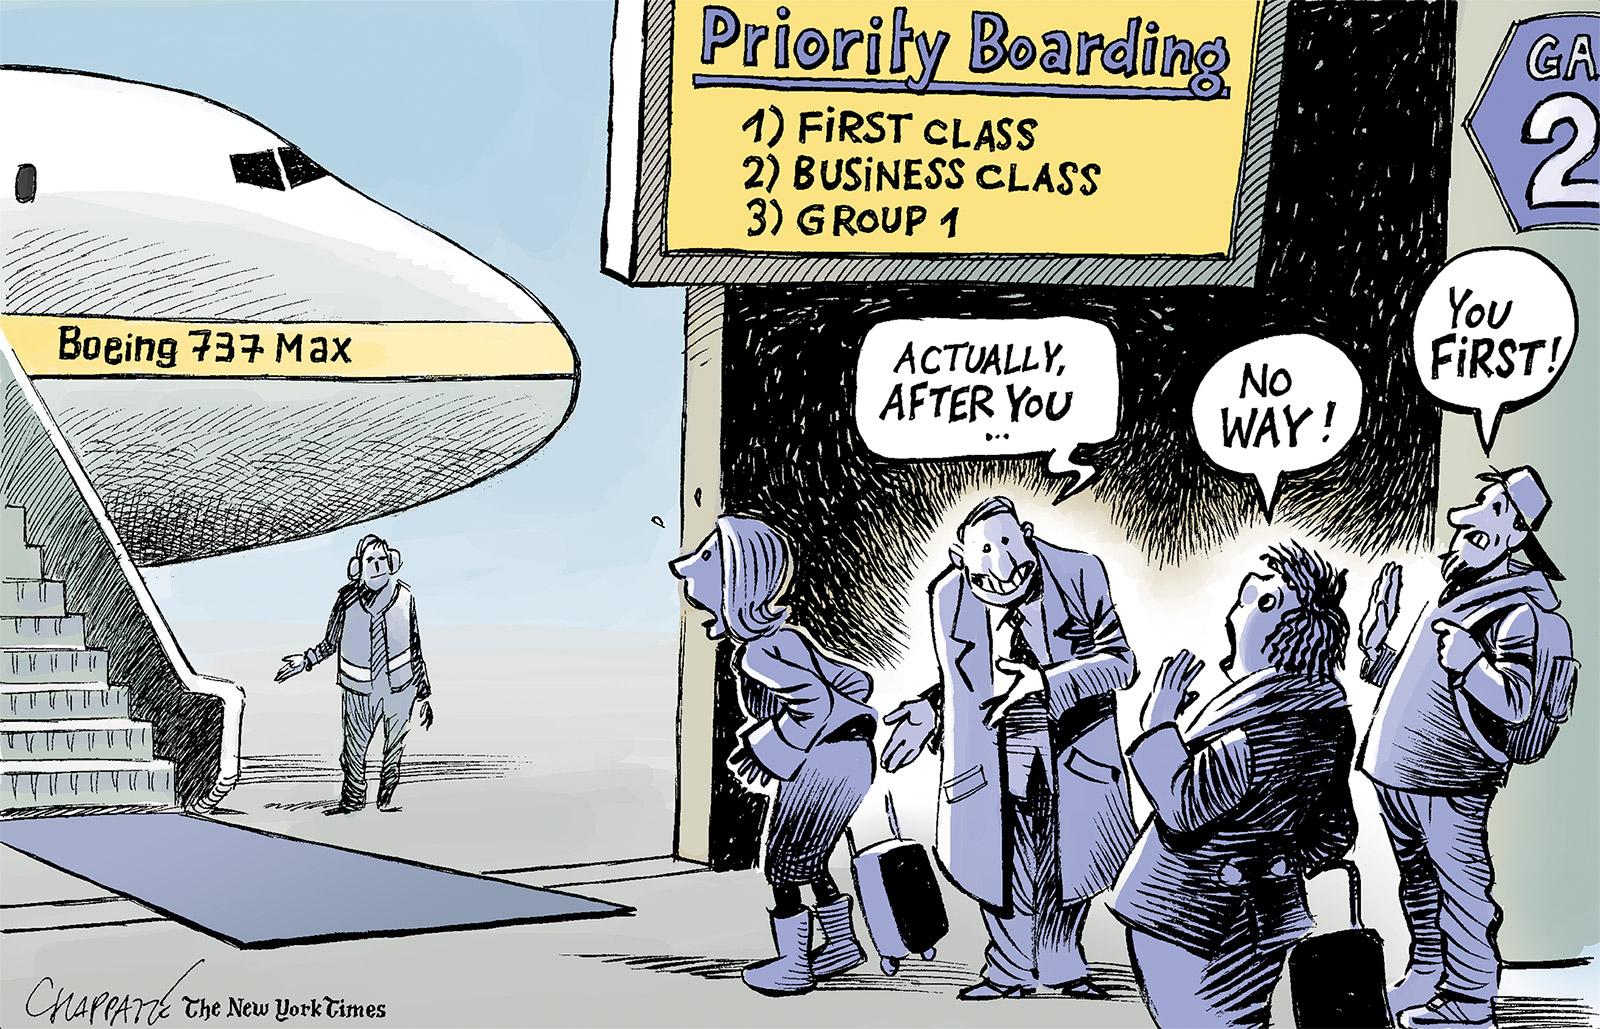 Safety concerns around Boeing 737 Max